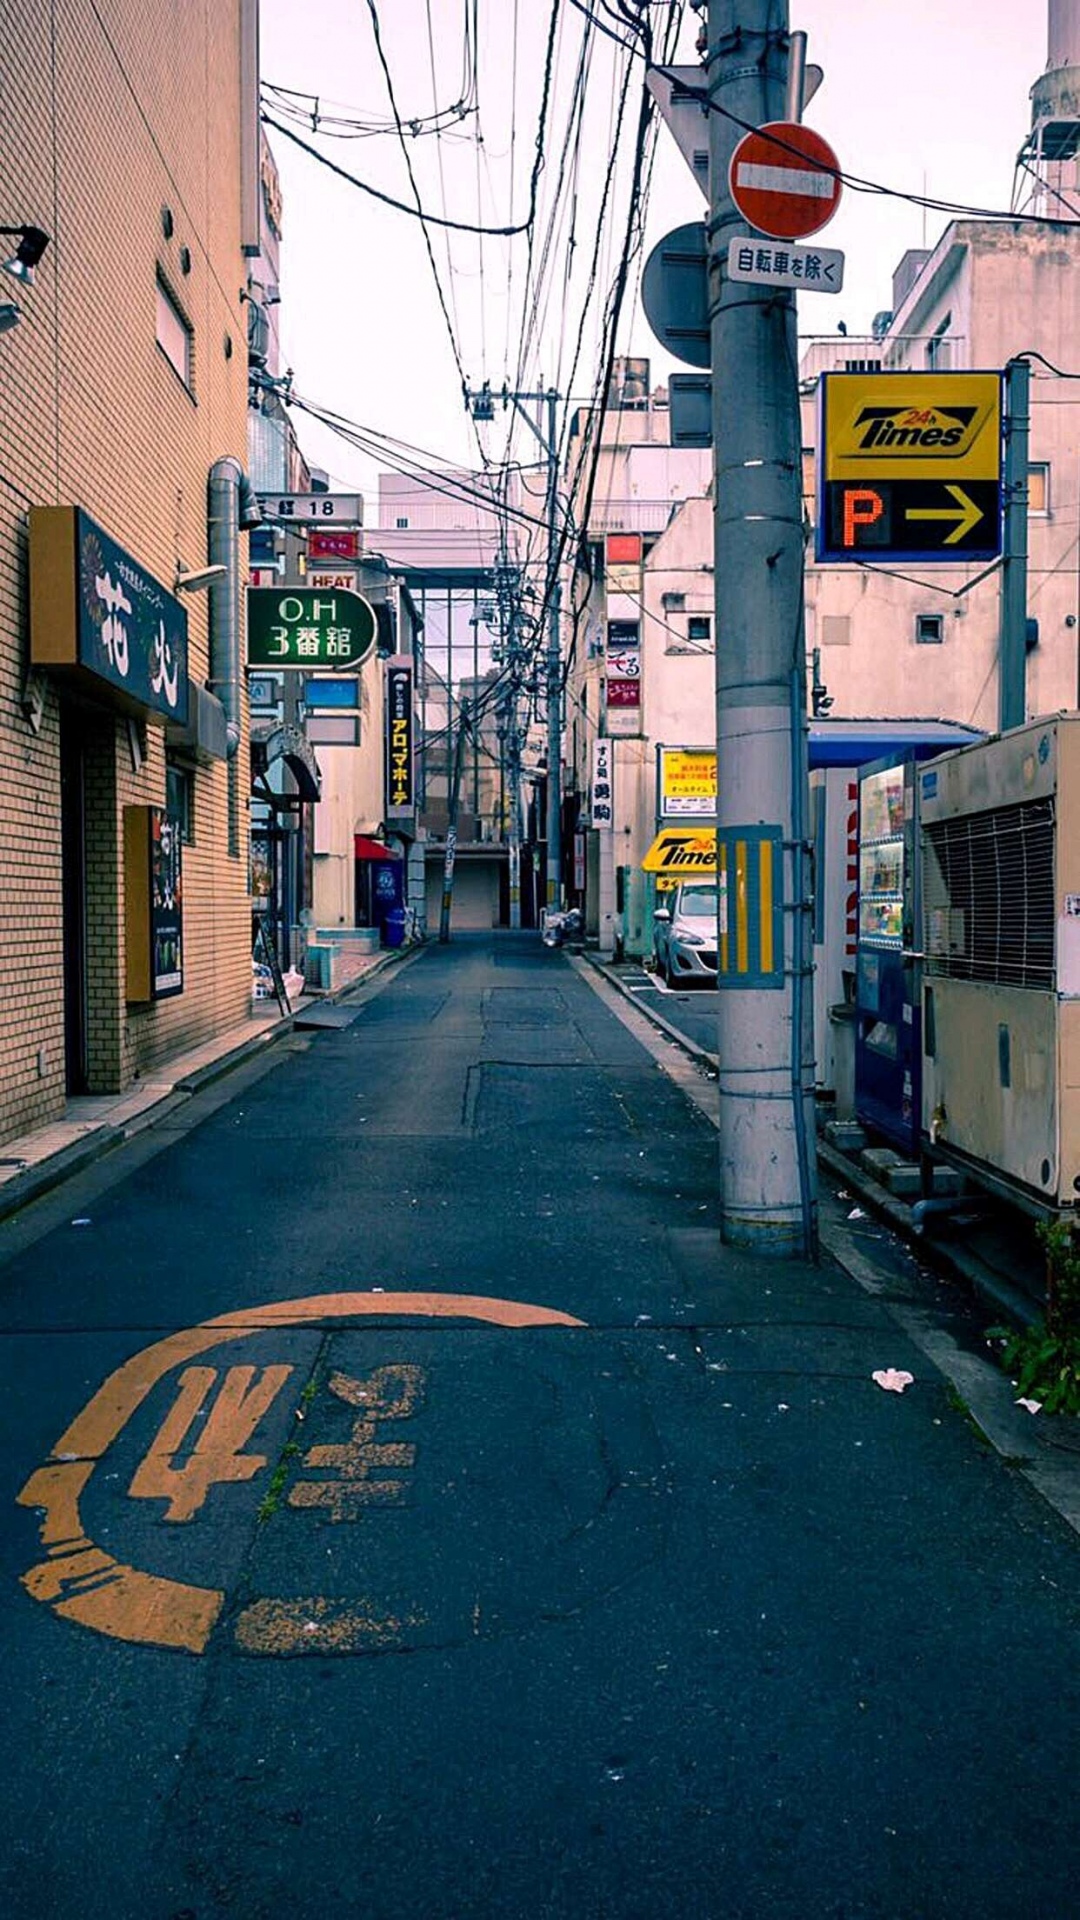 景物街道风景图,日系